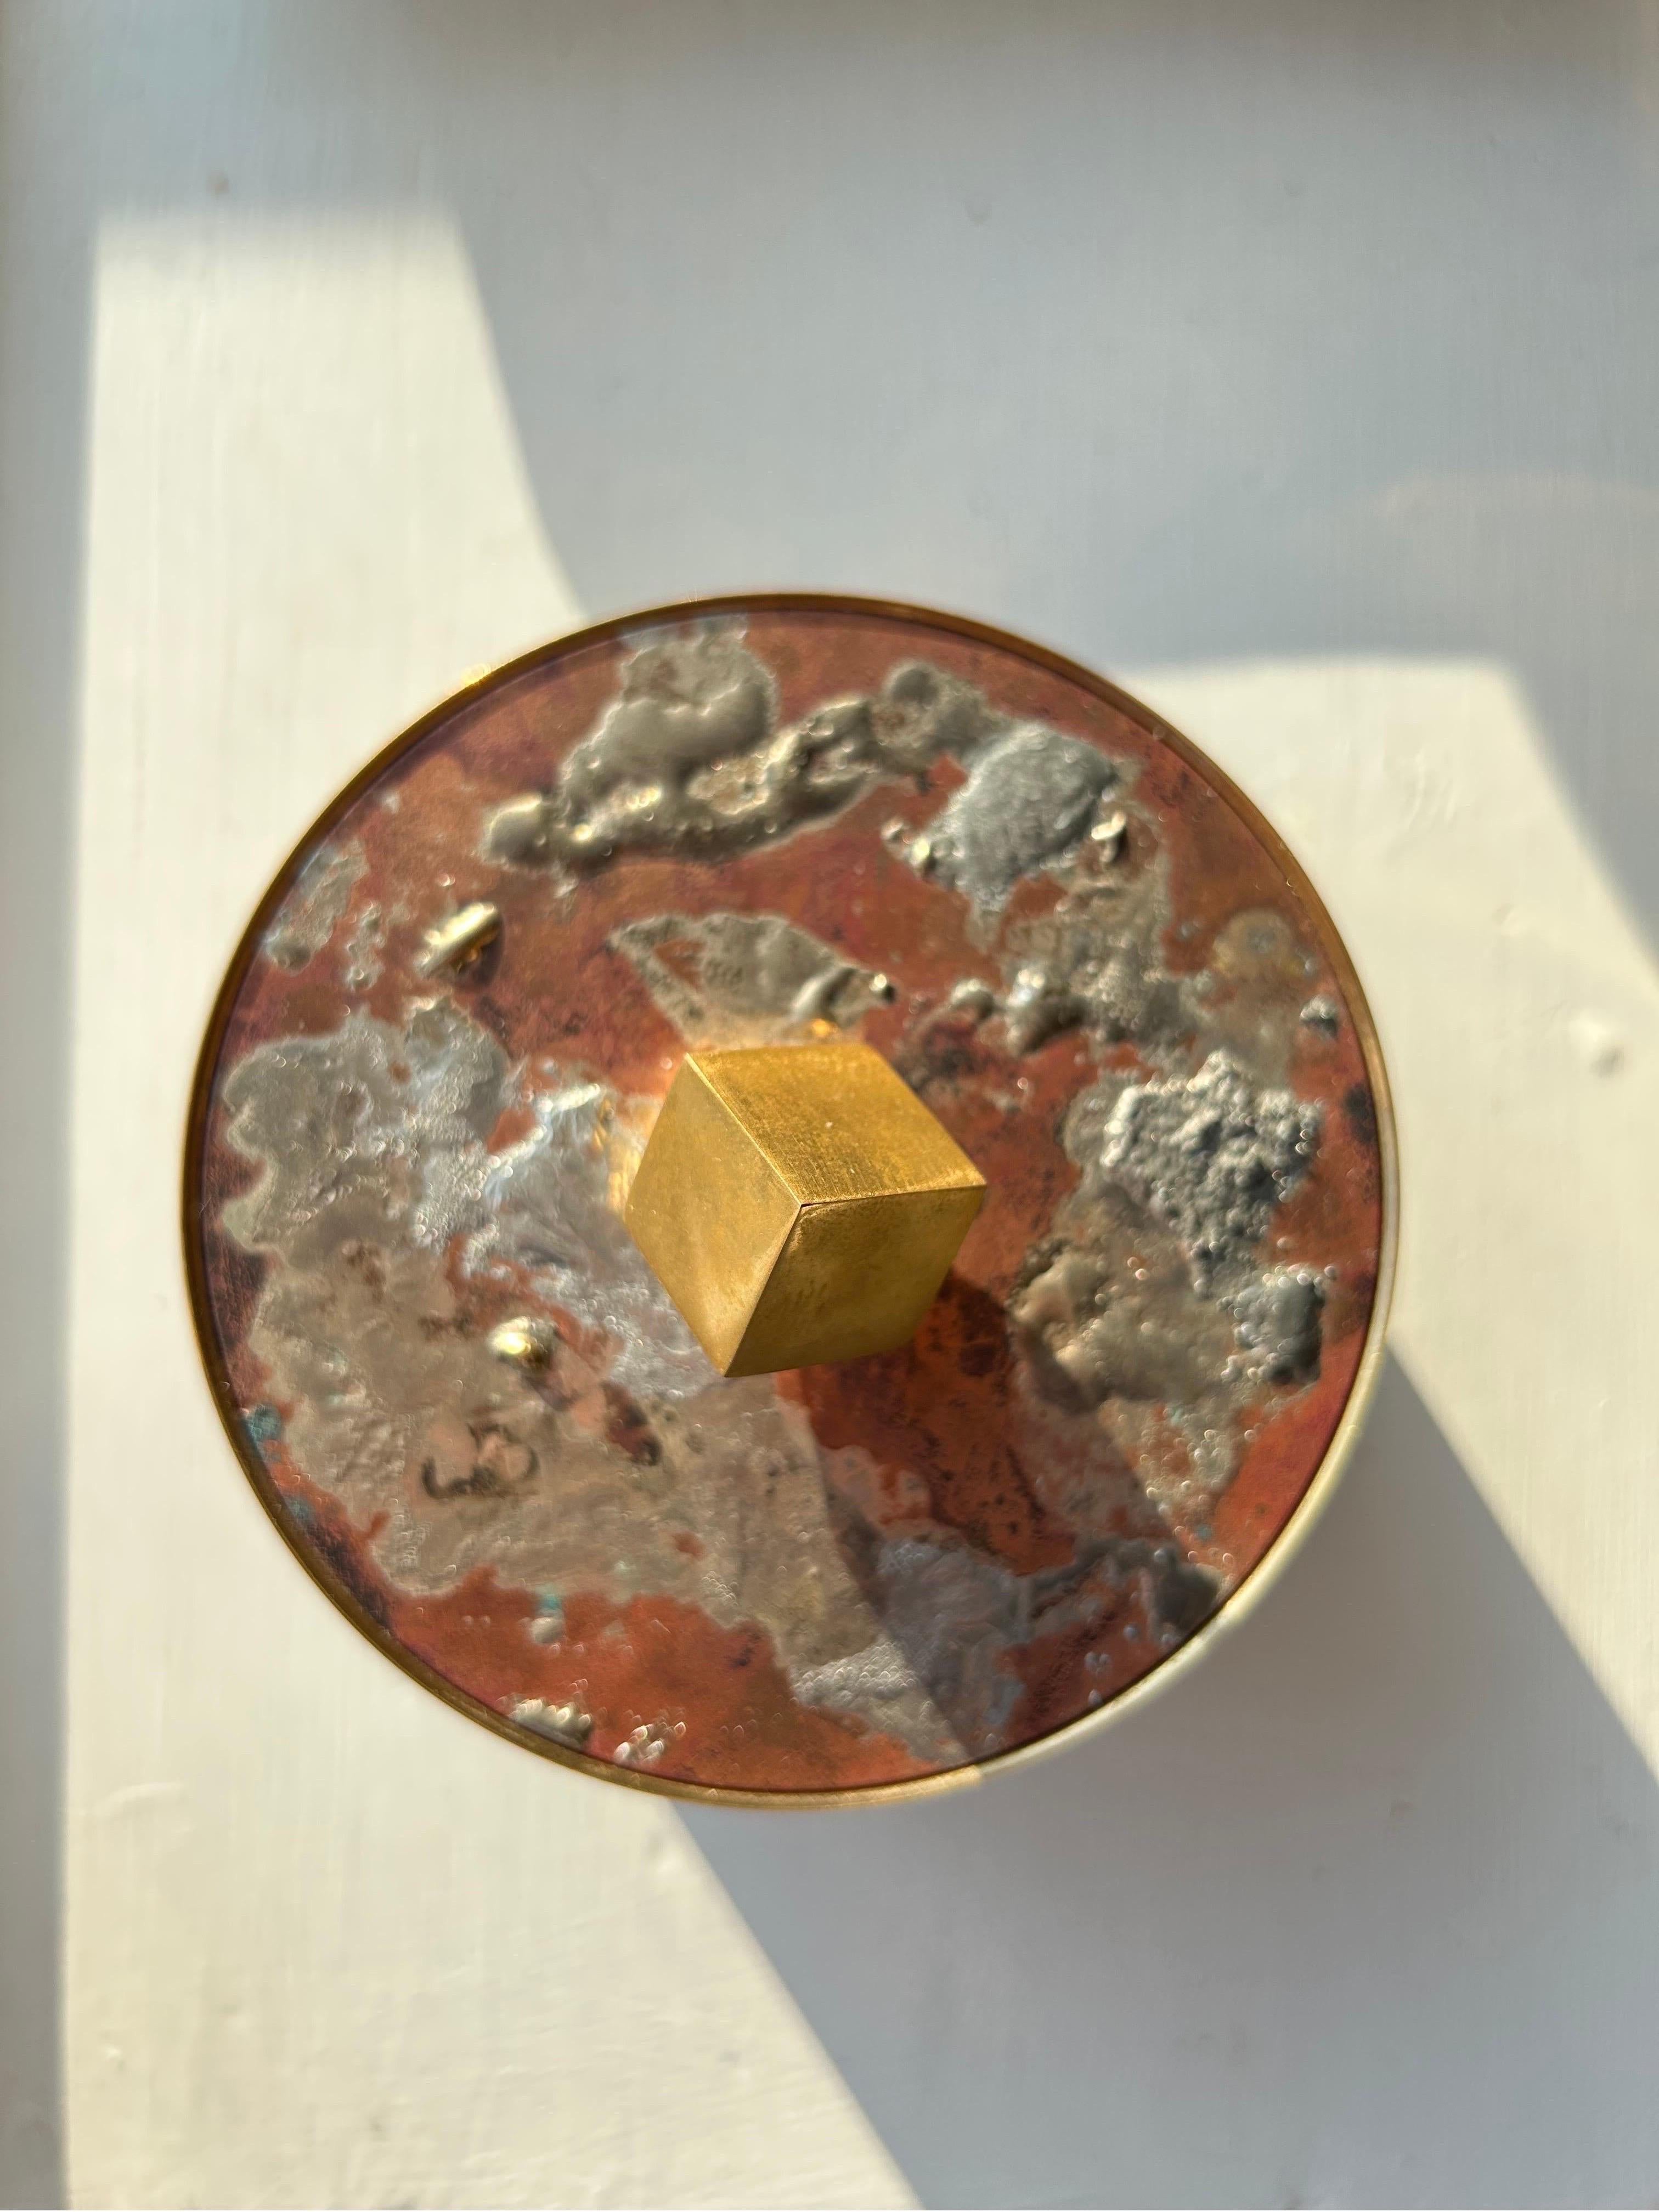 Rare et importante jarre à couvercle en laiton de Pierre Forsell fabriquée par Skultuna dans les années 1970.

Le couvercle est en laiton massif et le couvercle est décoré d'un mélange de cuivre et de chrome.

Cette jarre est le détail décoratif